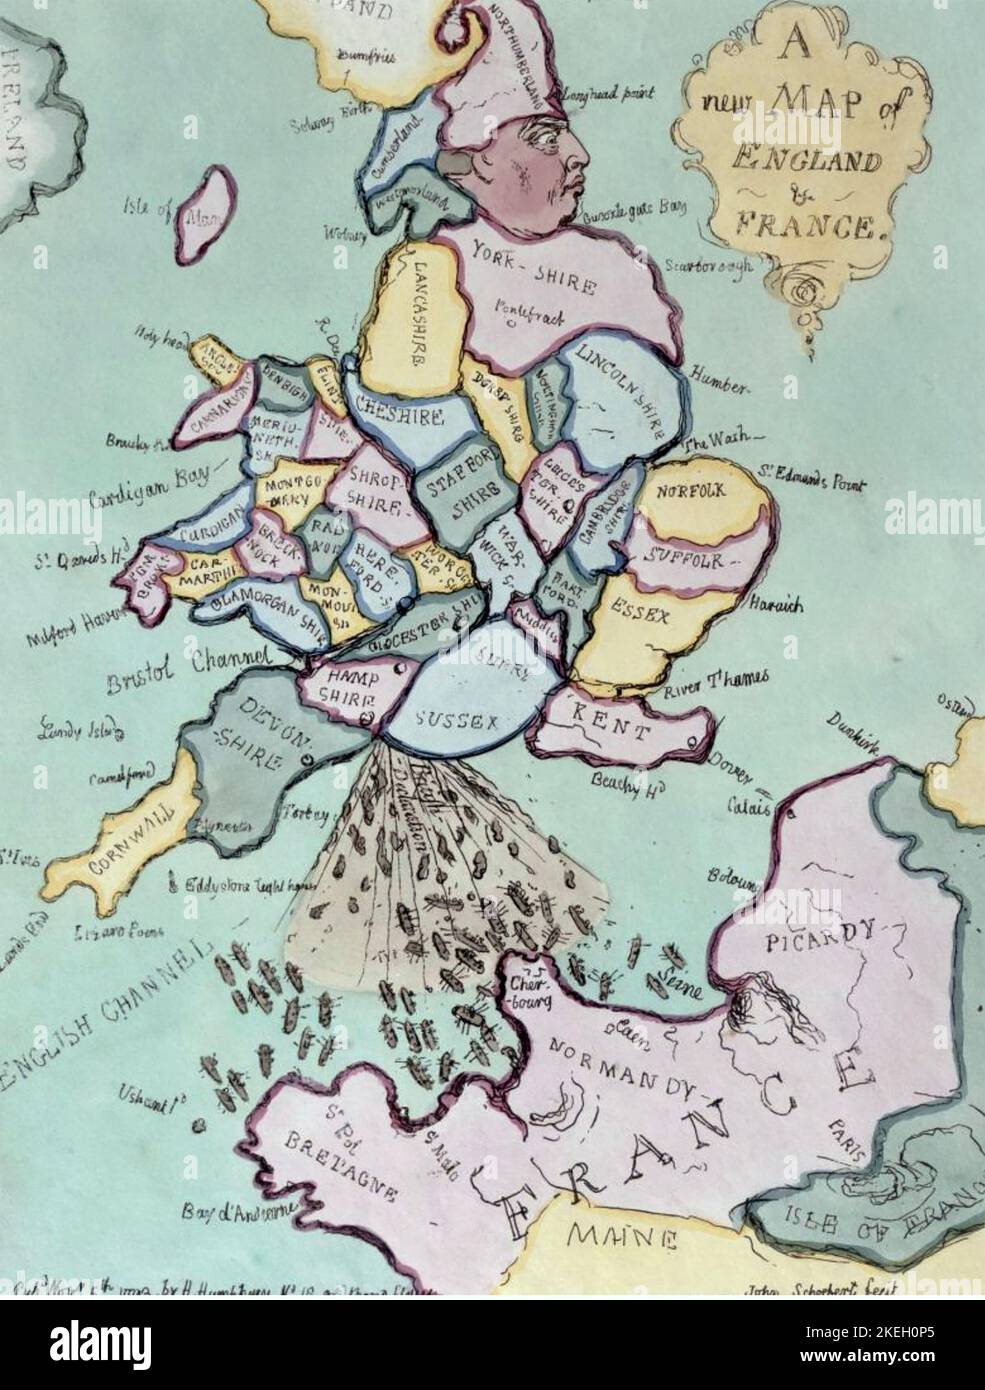 JAMES GILLRAY (7565-1818) Caricaturista inglés. 'Un nuevo mapa de Inglaterra y Francia - la invasión francesa o John Bull bombardeando los Bum-boats' Foto de stock